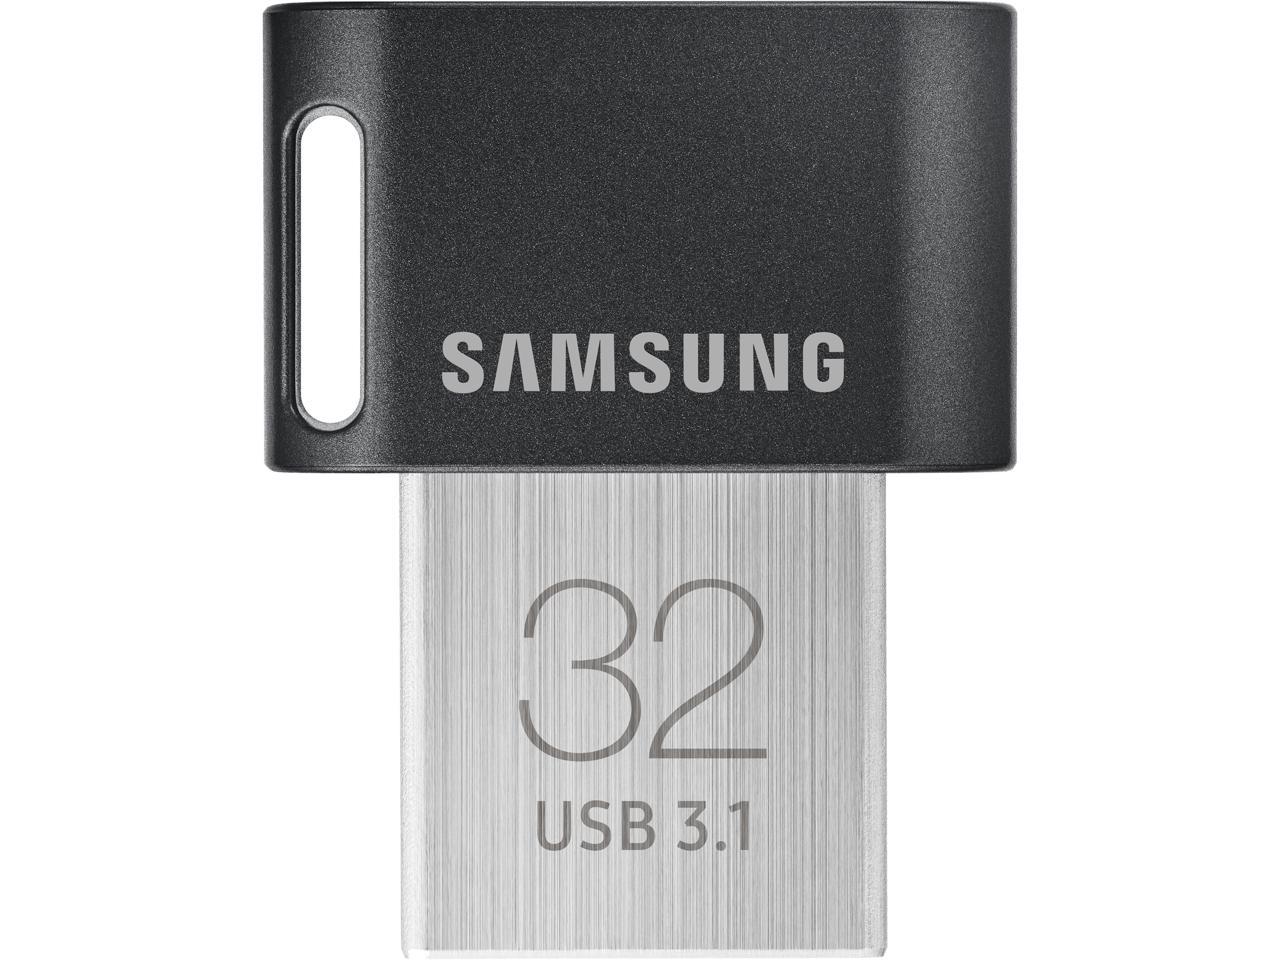 Samsung FIT Plus 32GB Speed Up 200MB/s USB 3.1 Flash Drive MUF-32AB Retail 